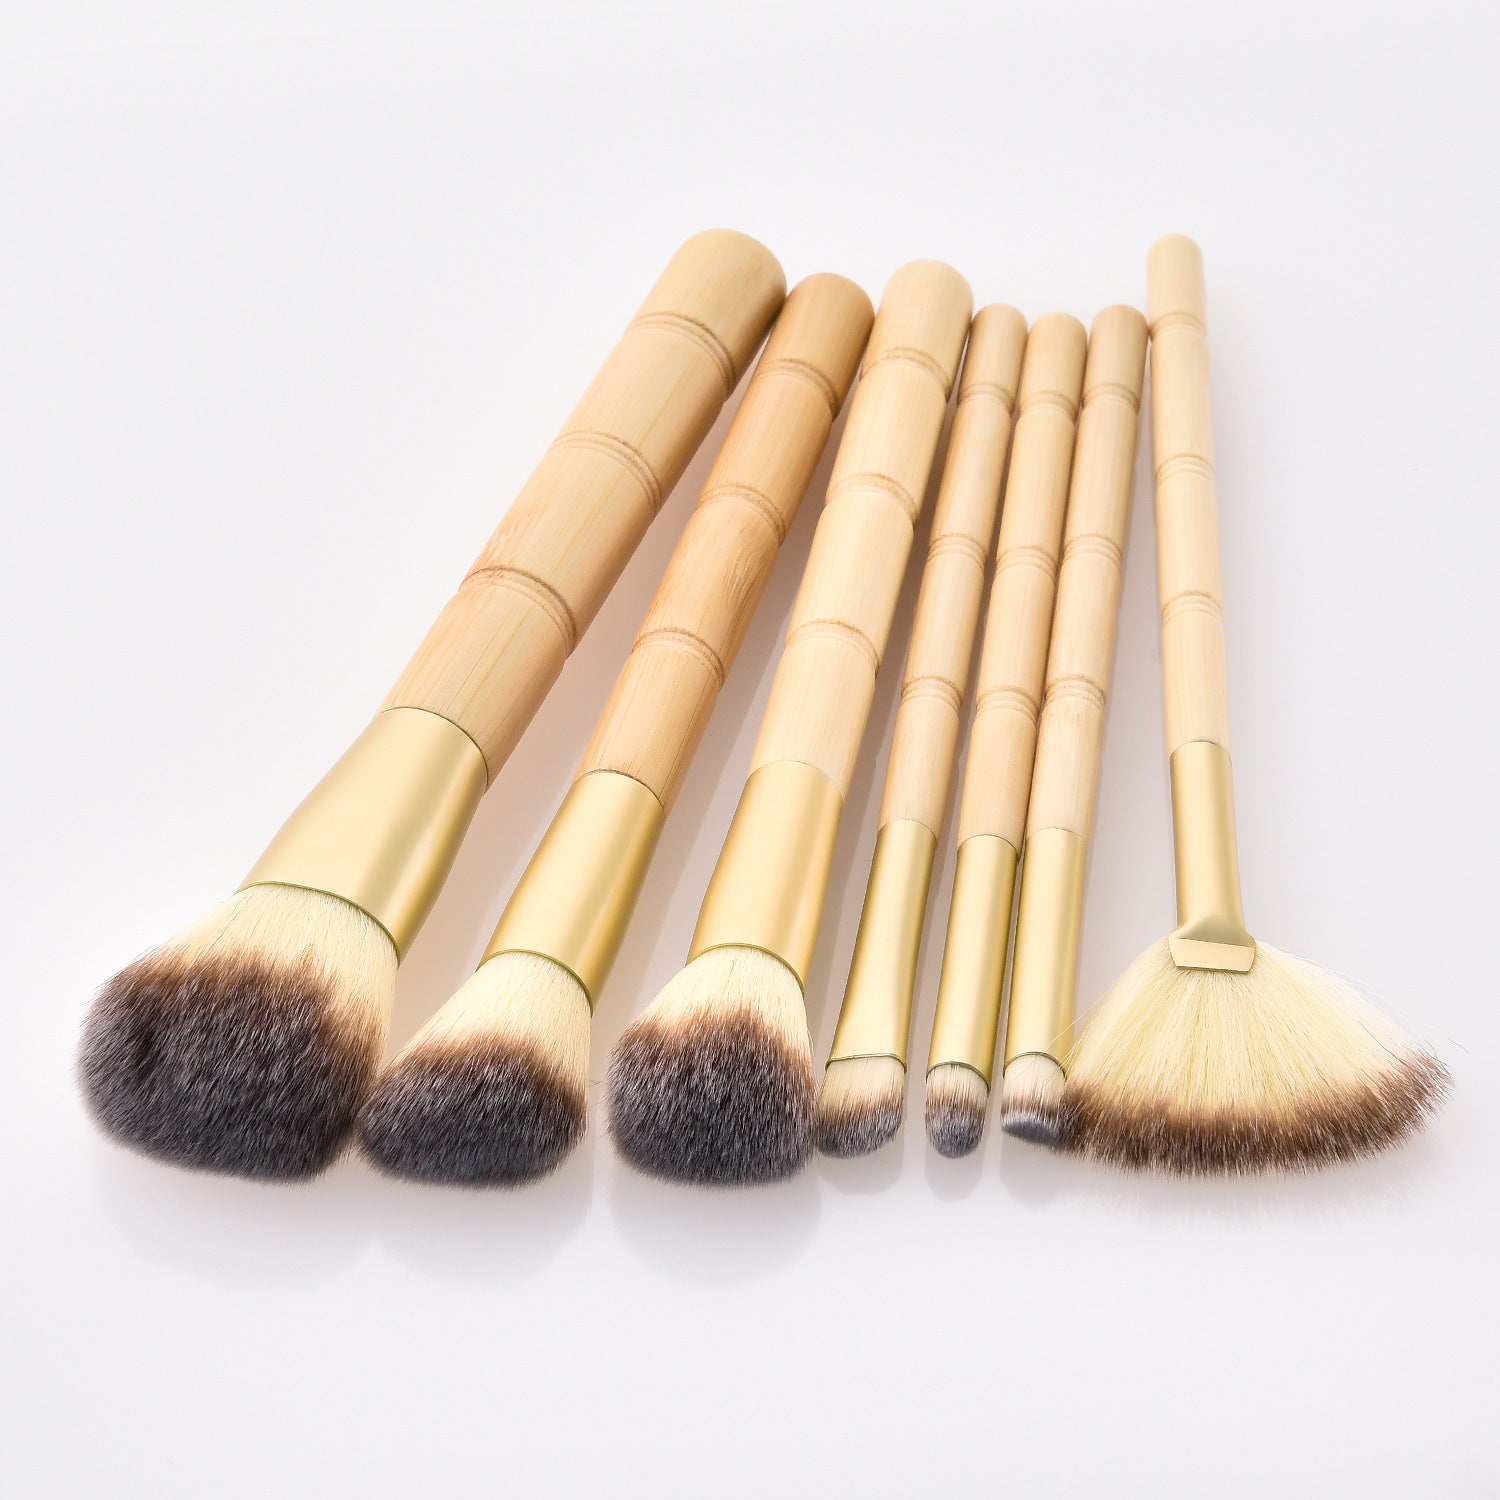 7 makeup brushes